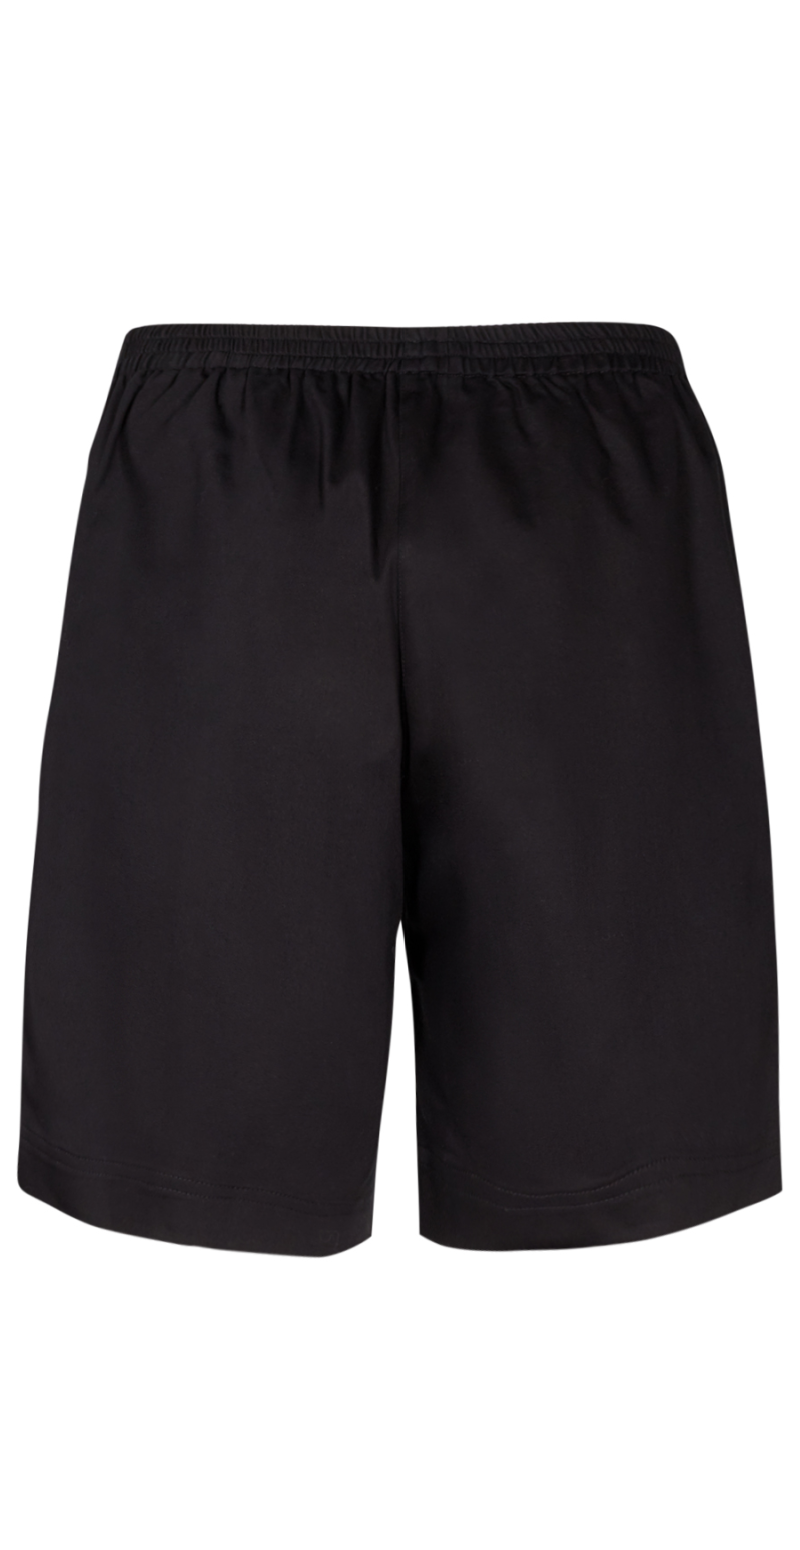 Lily shorts med elastik og detaljer sort